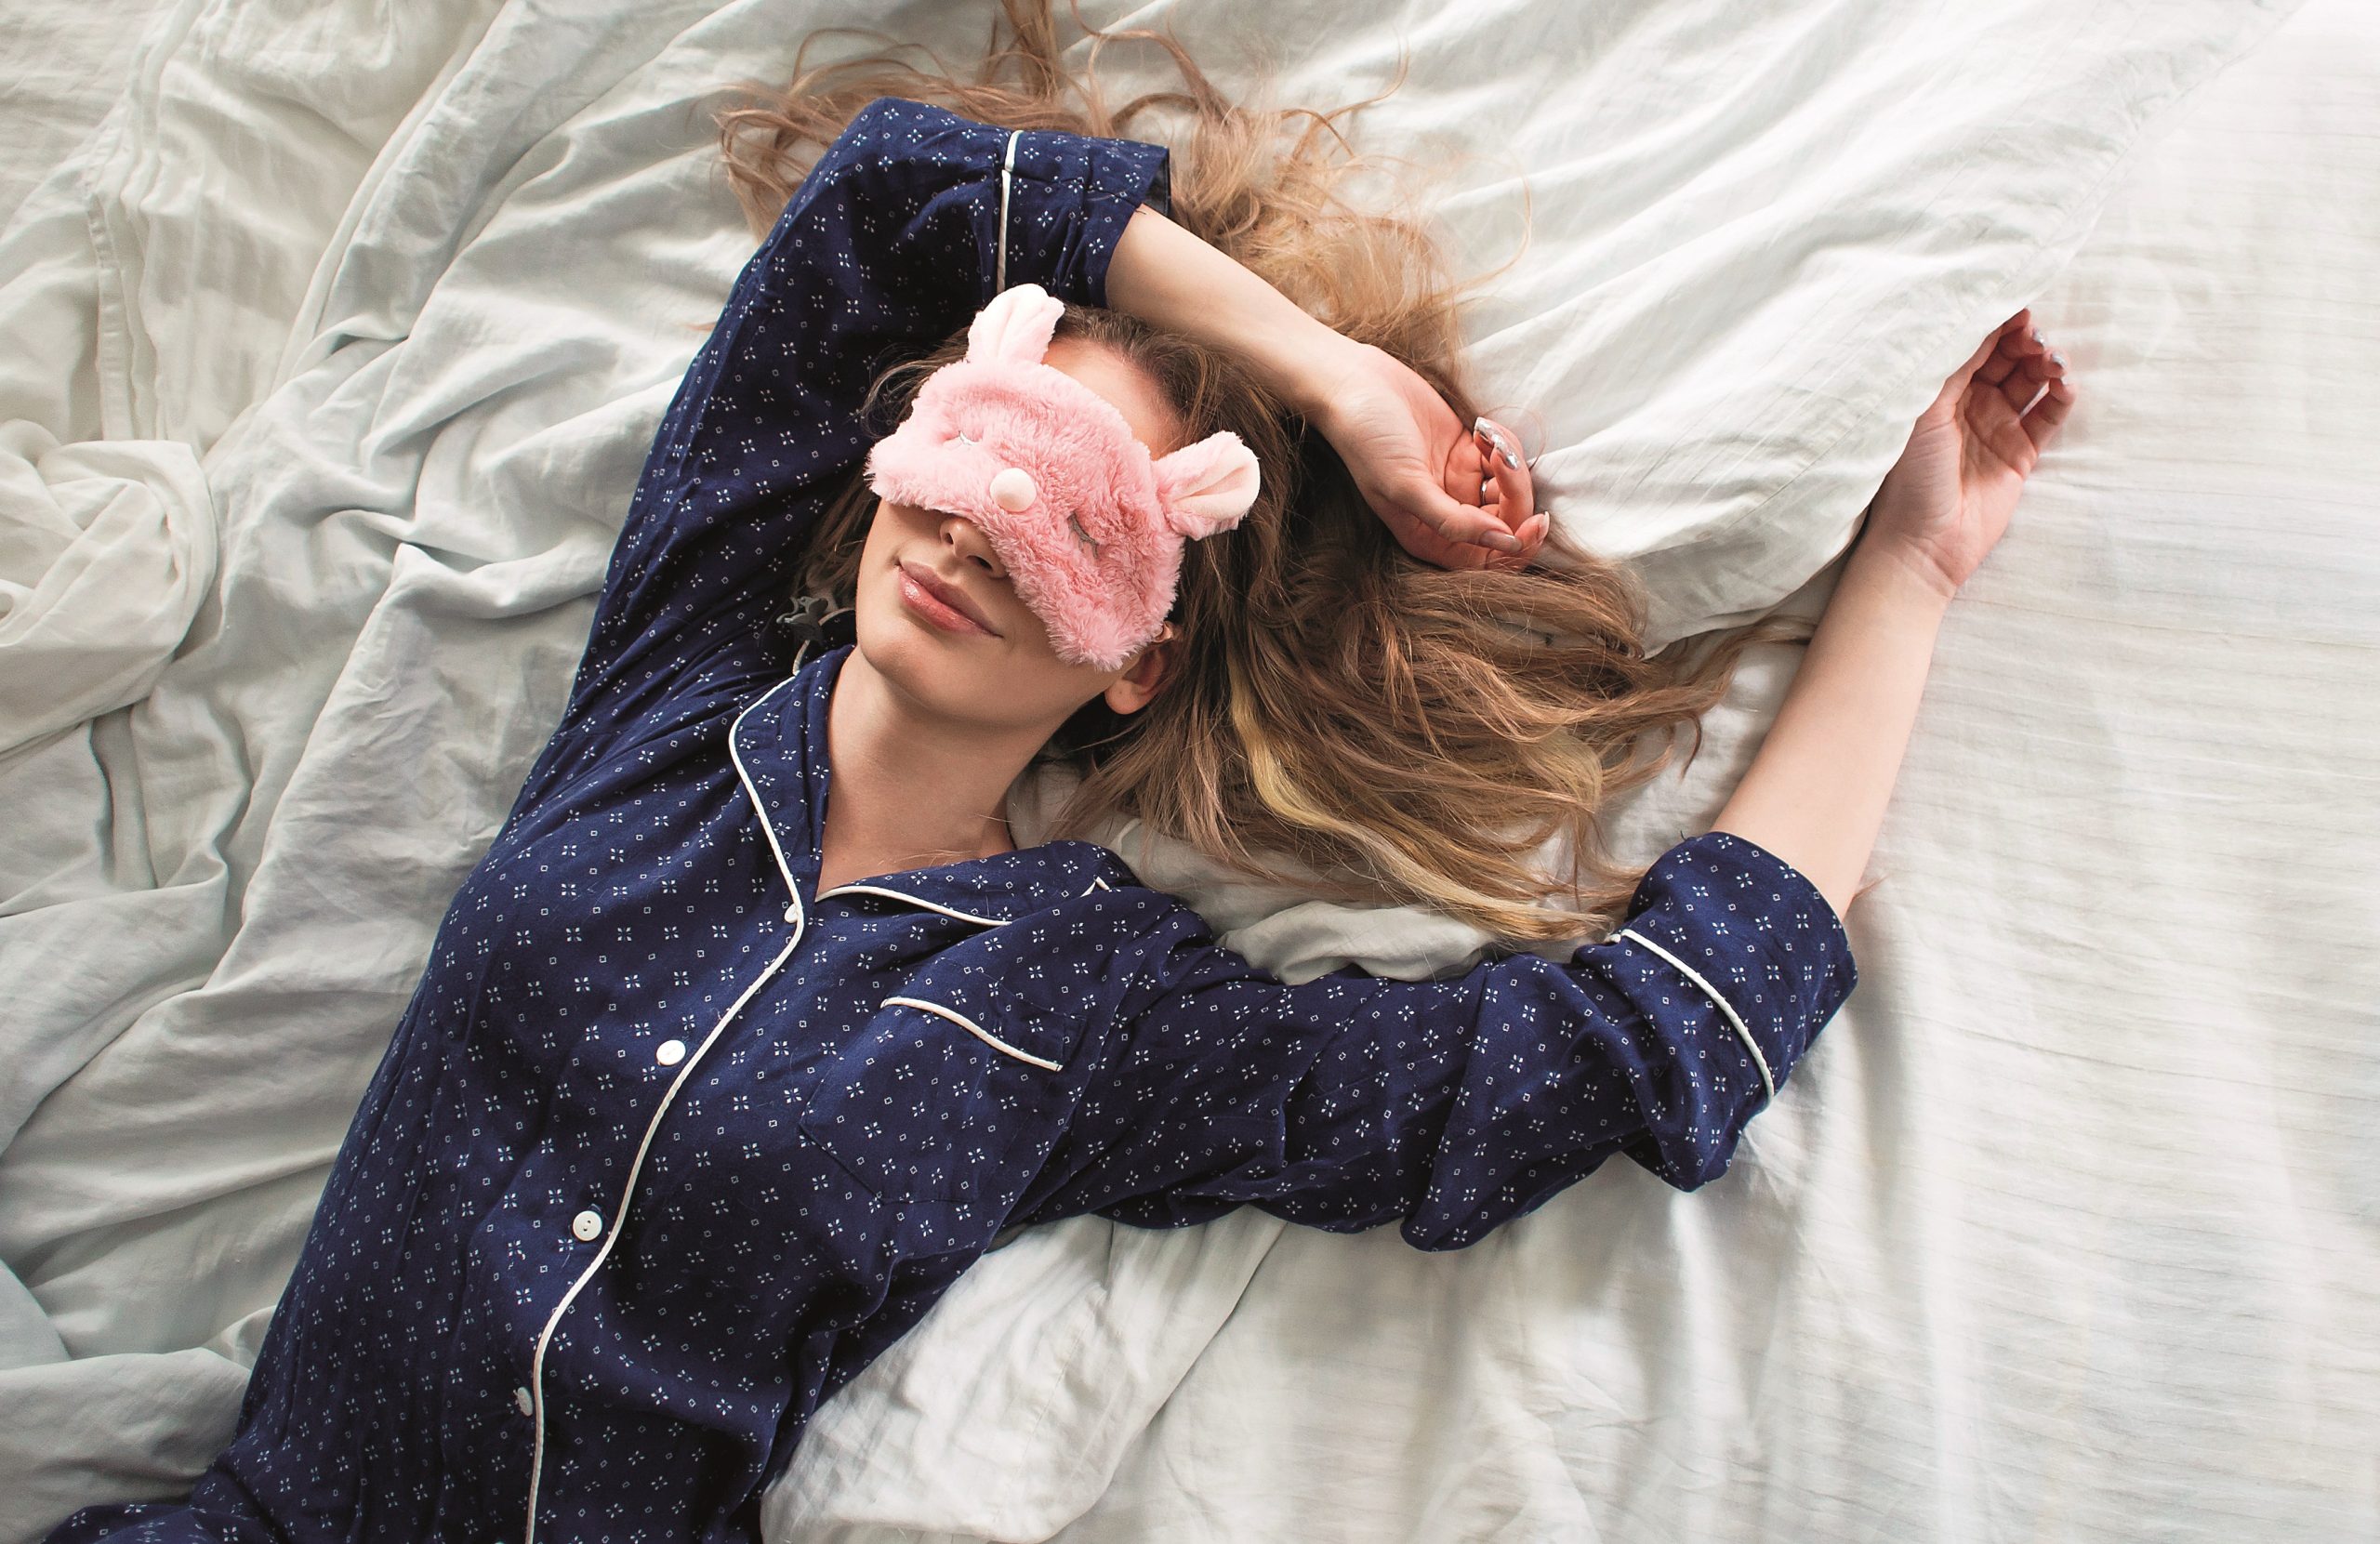 Ύπνος: Πέντε λόγοι για τους οποίους είναι καλύτερα να κοιμάσαι ανάσκελα